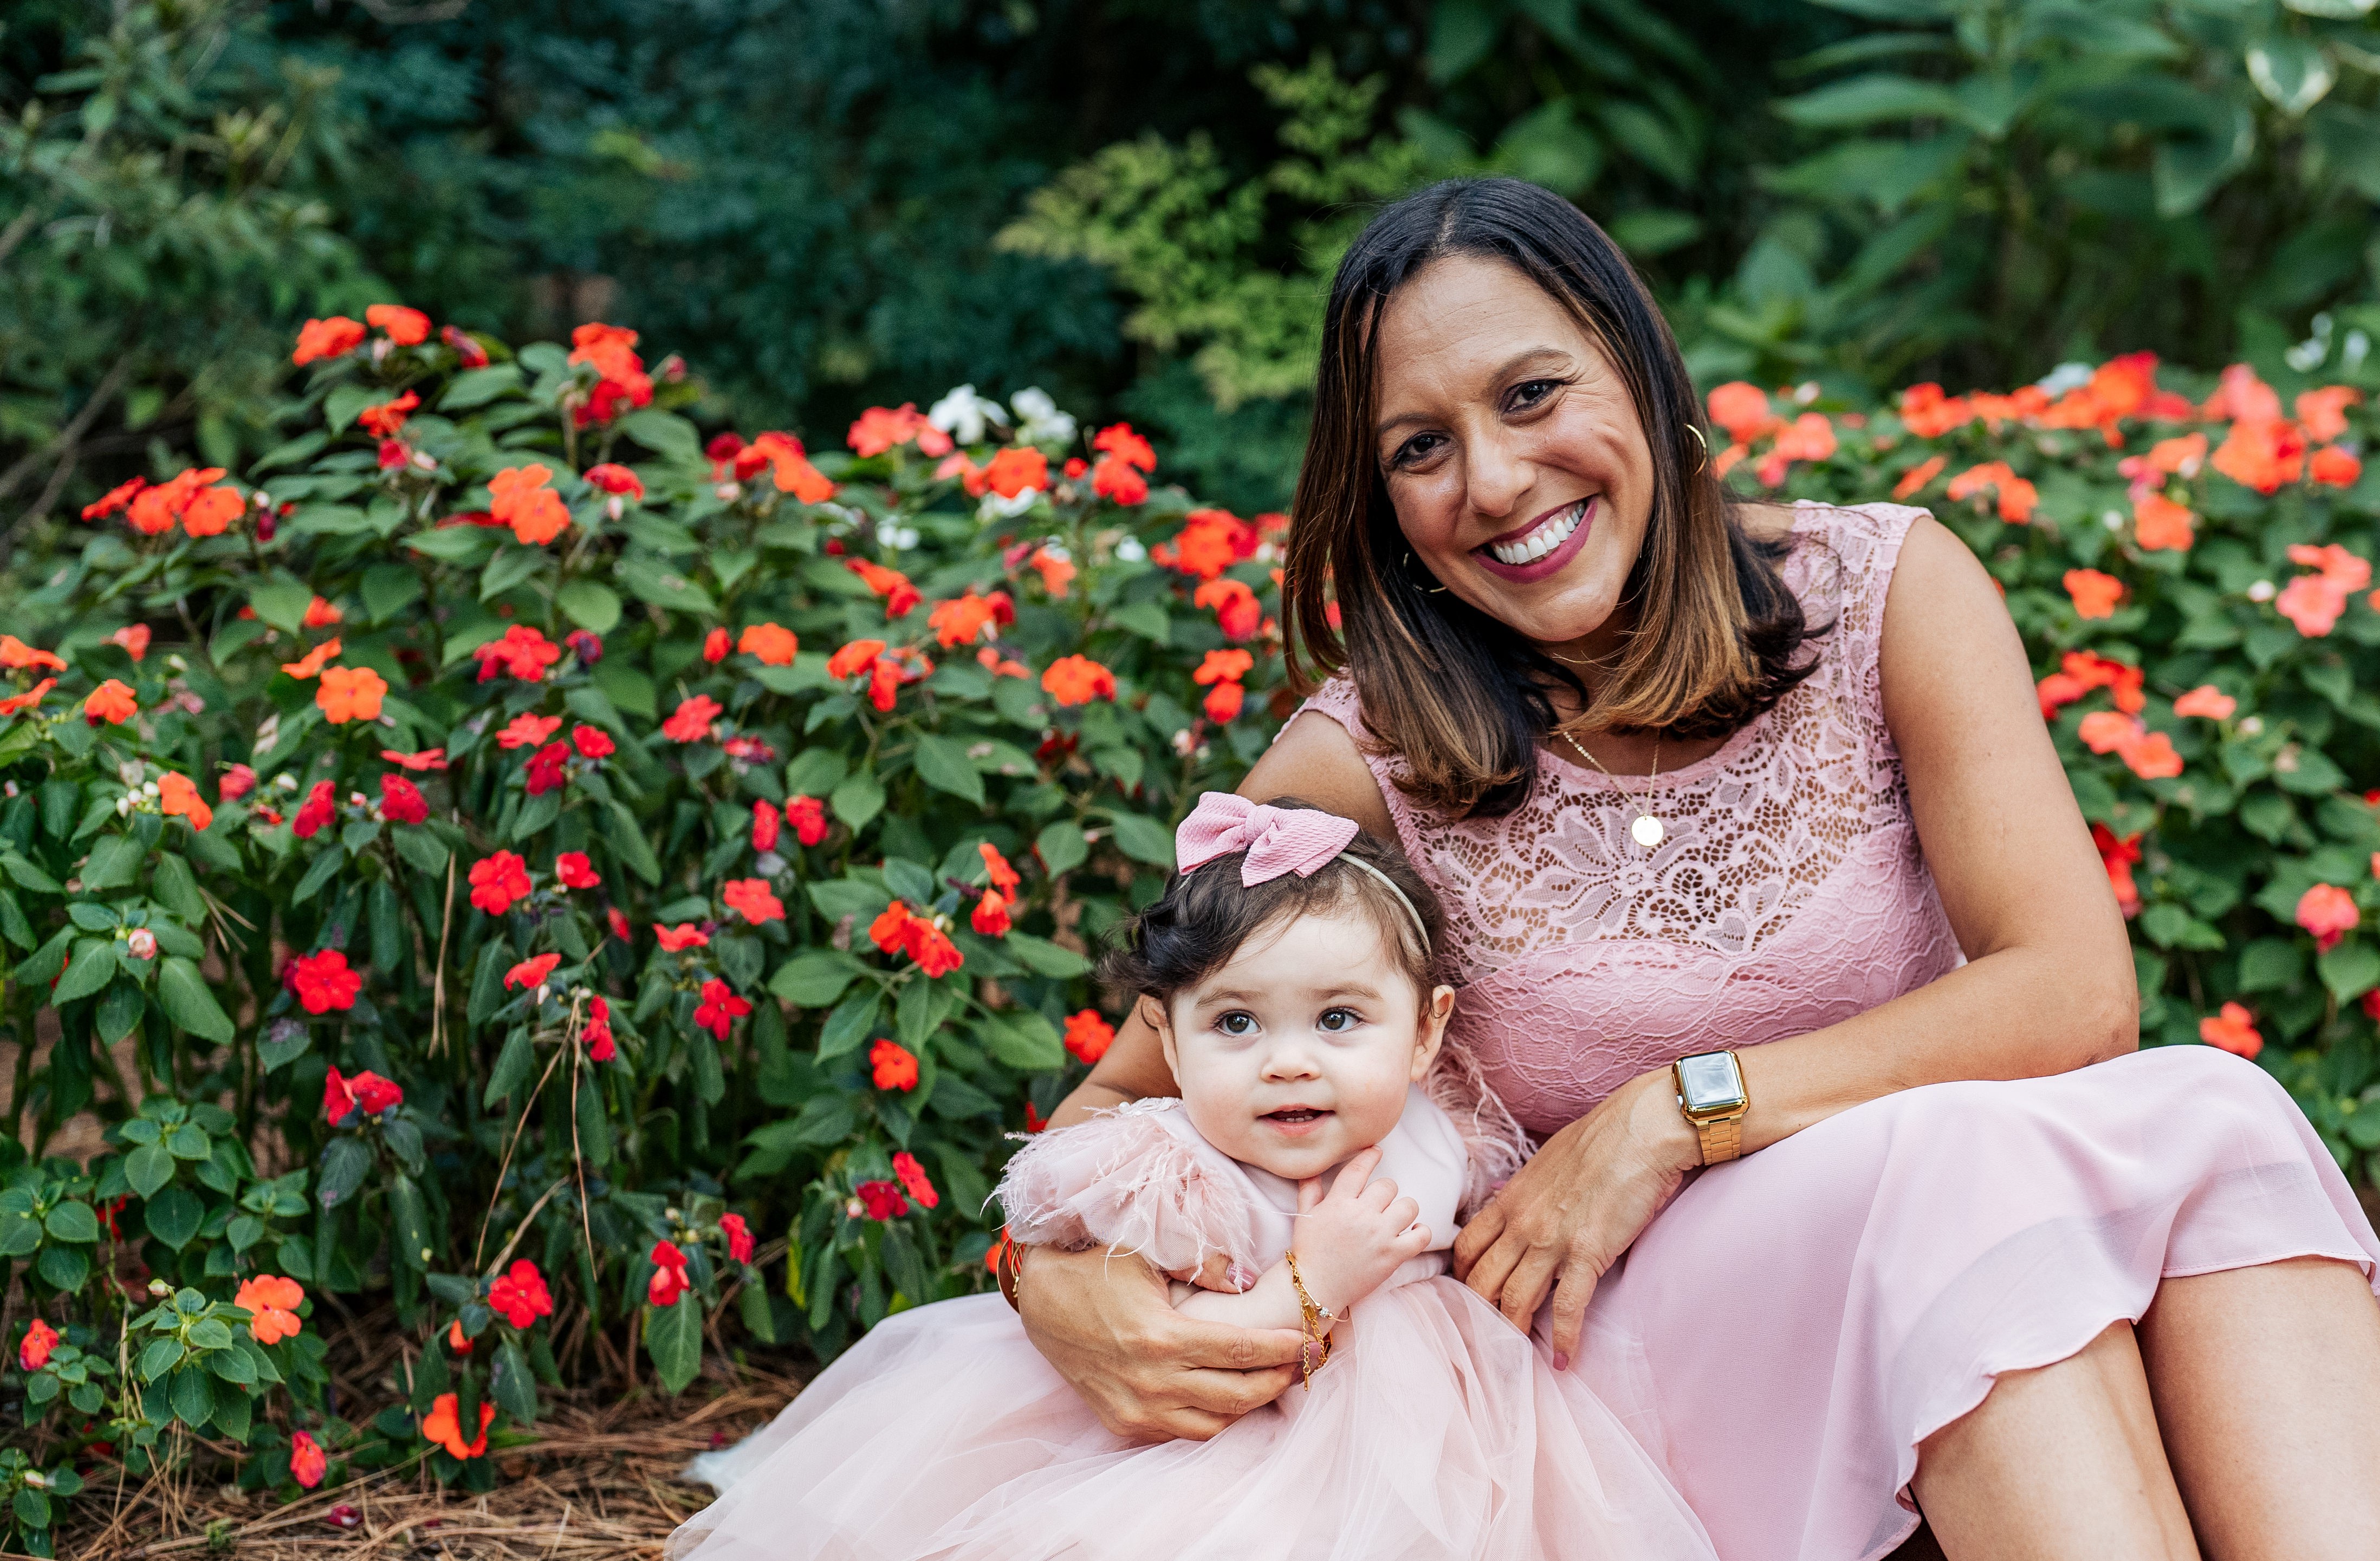 IIia Torres Rivera and her daughter.